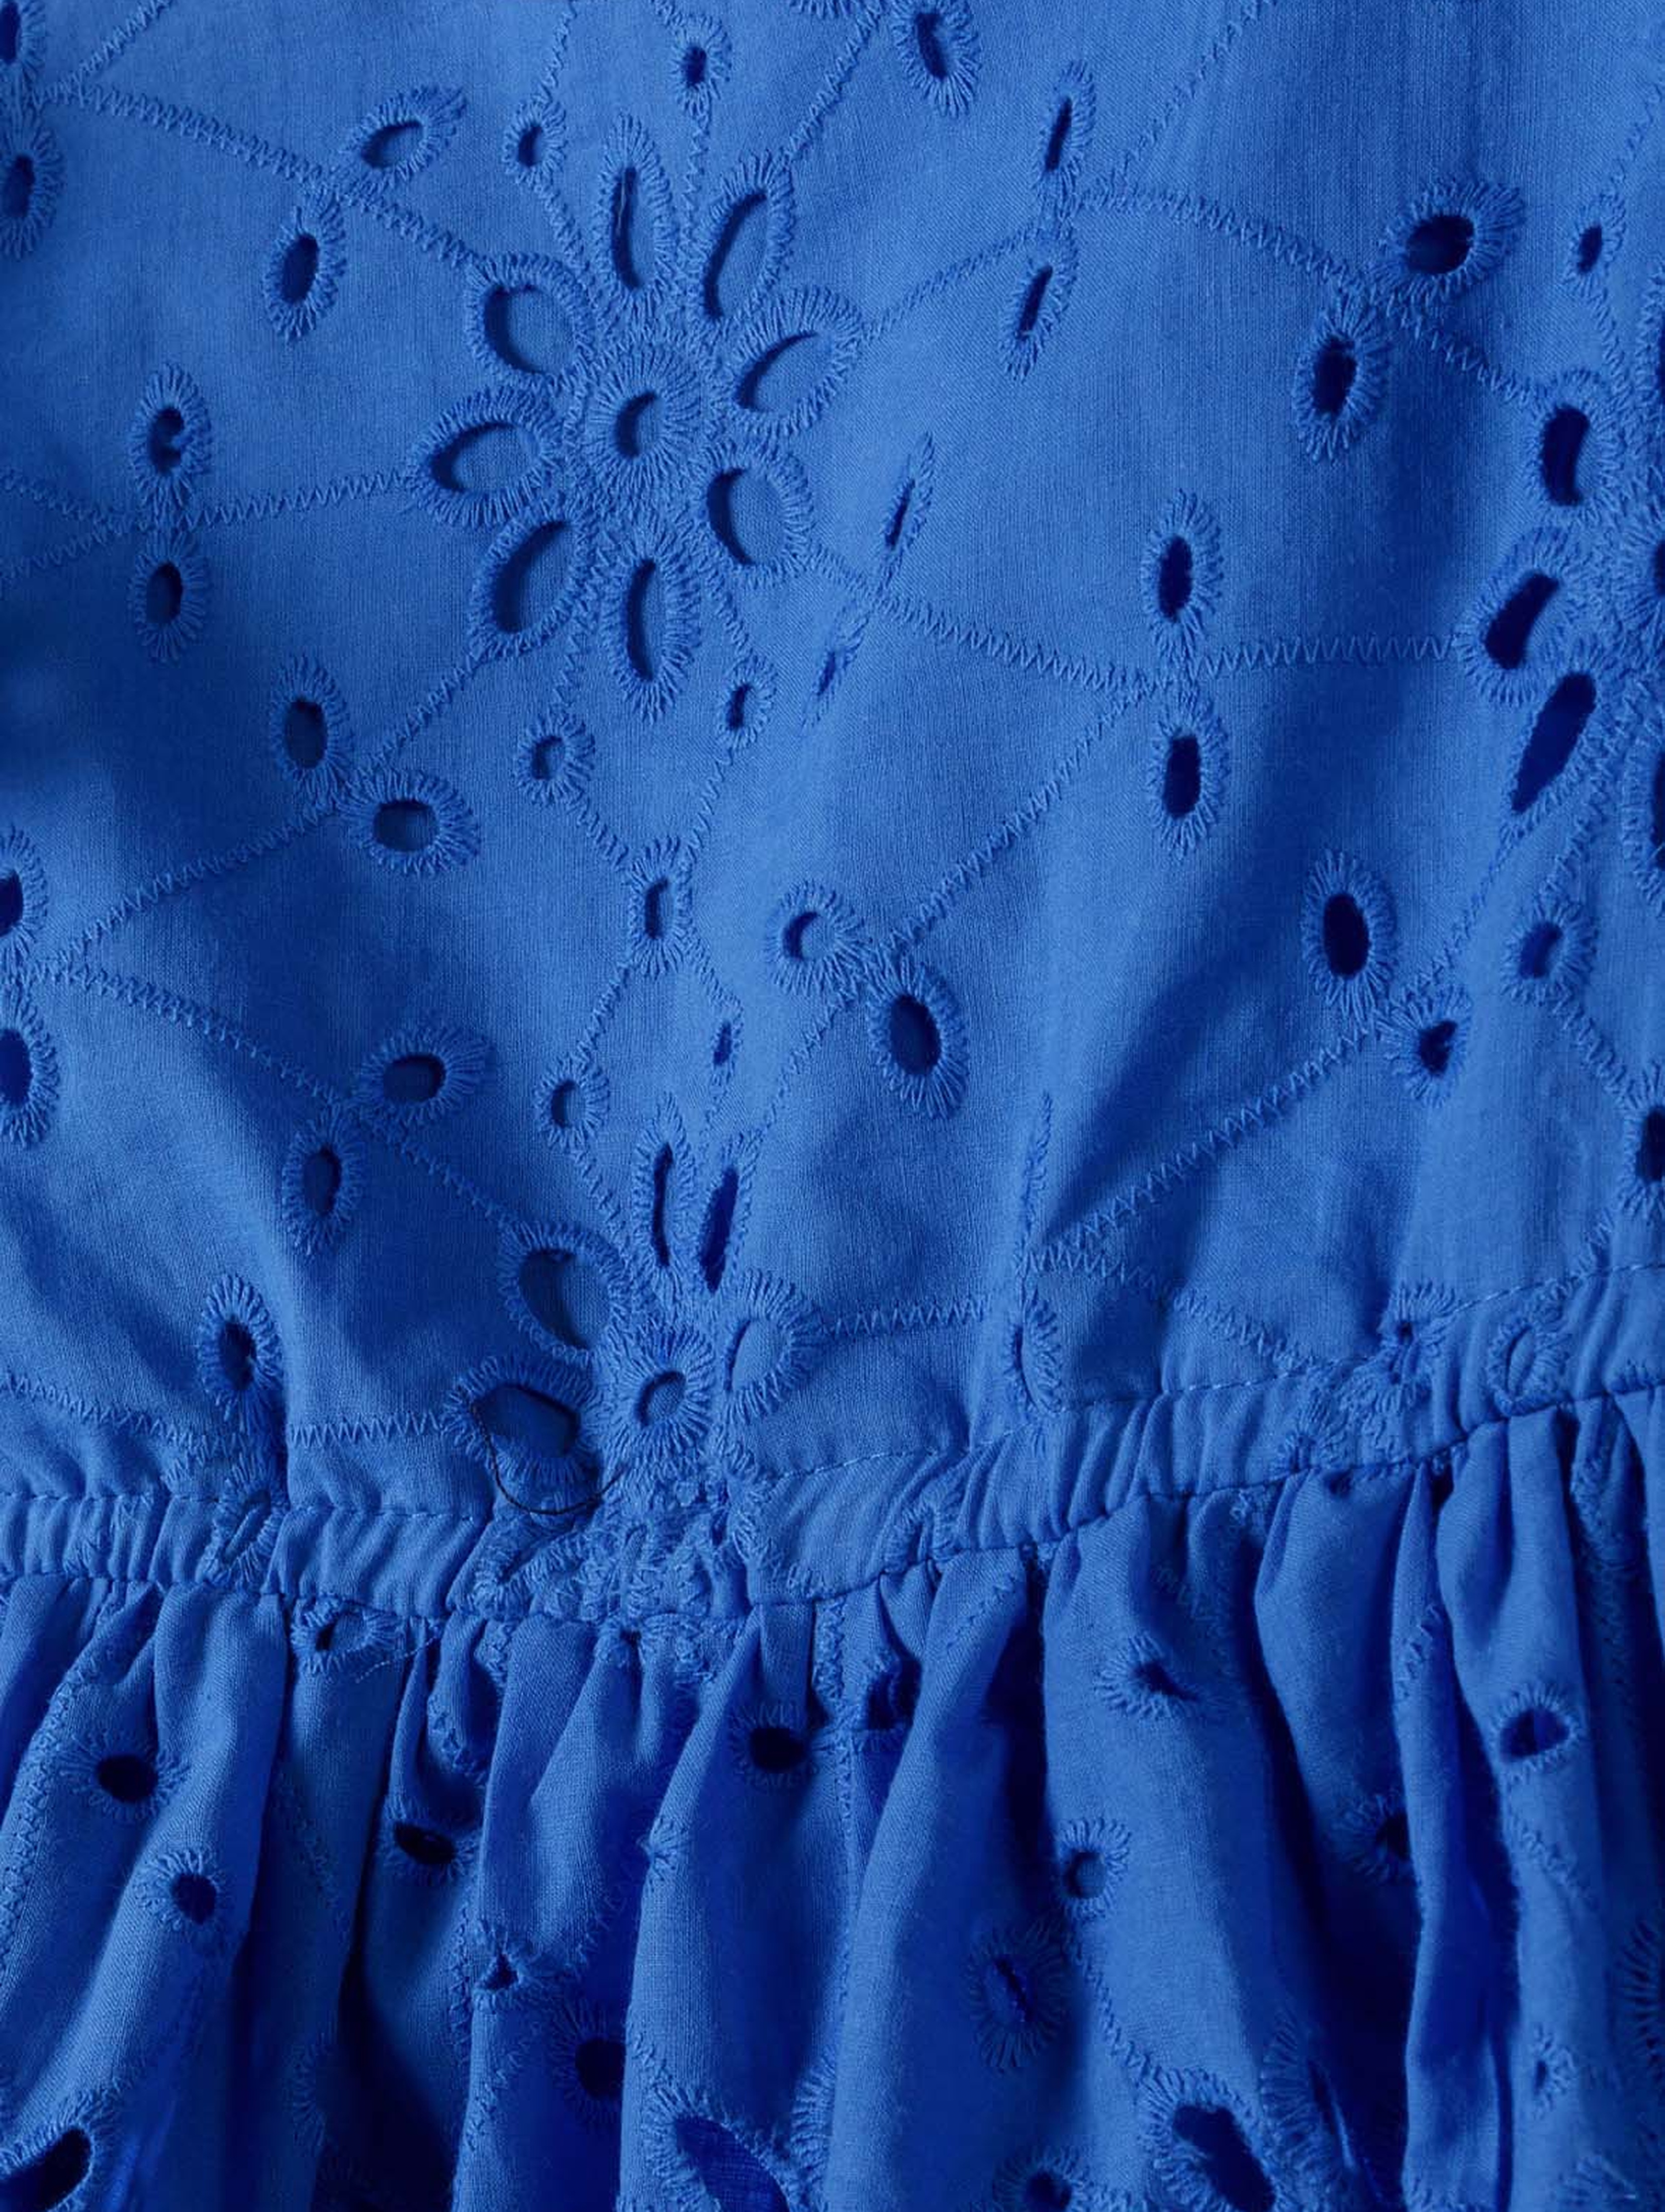 Letnia sukienka niebieska z haftowanej tkaniny dla dziewczynki